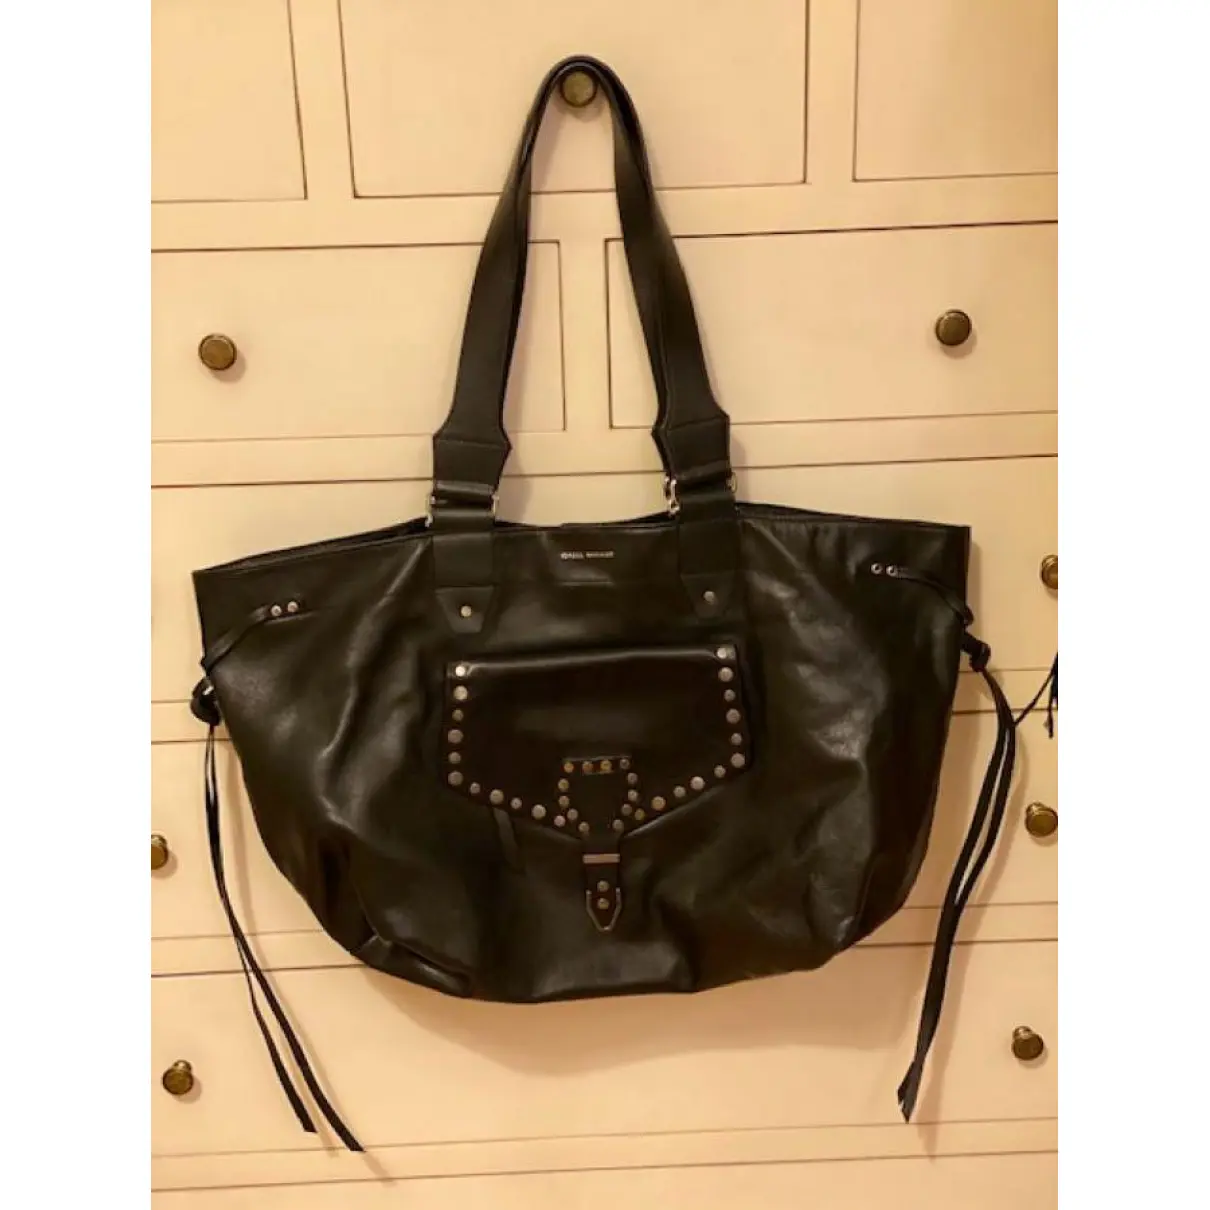 Buy Isabel Marant Leather handbag online